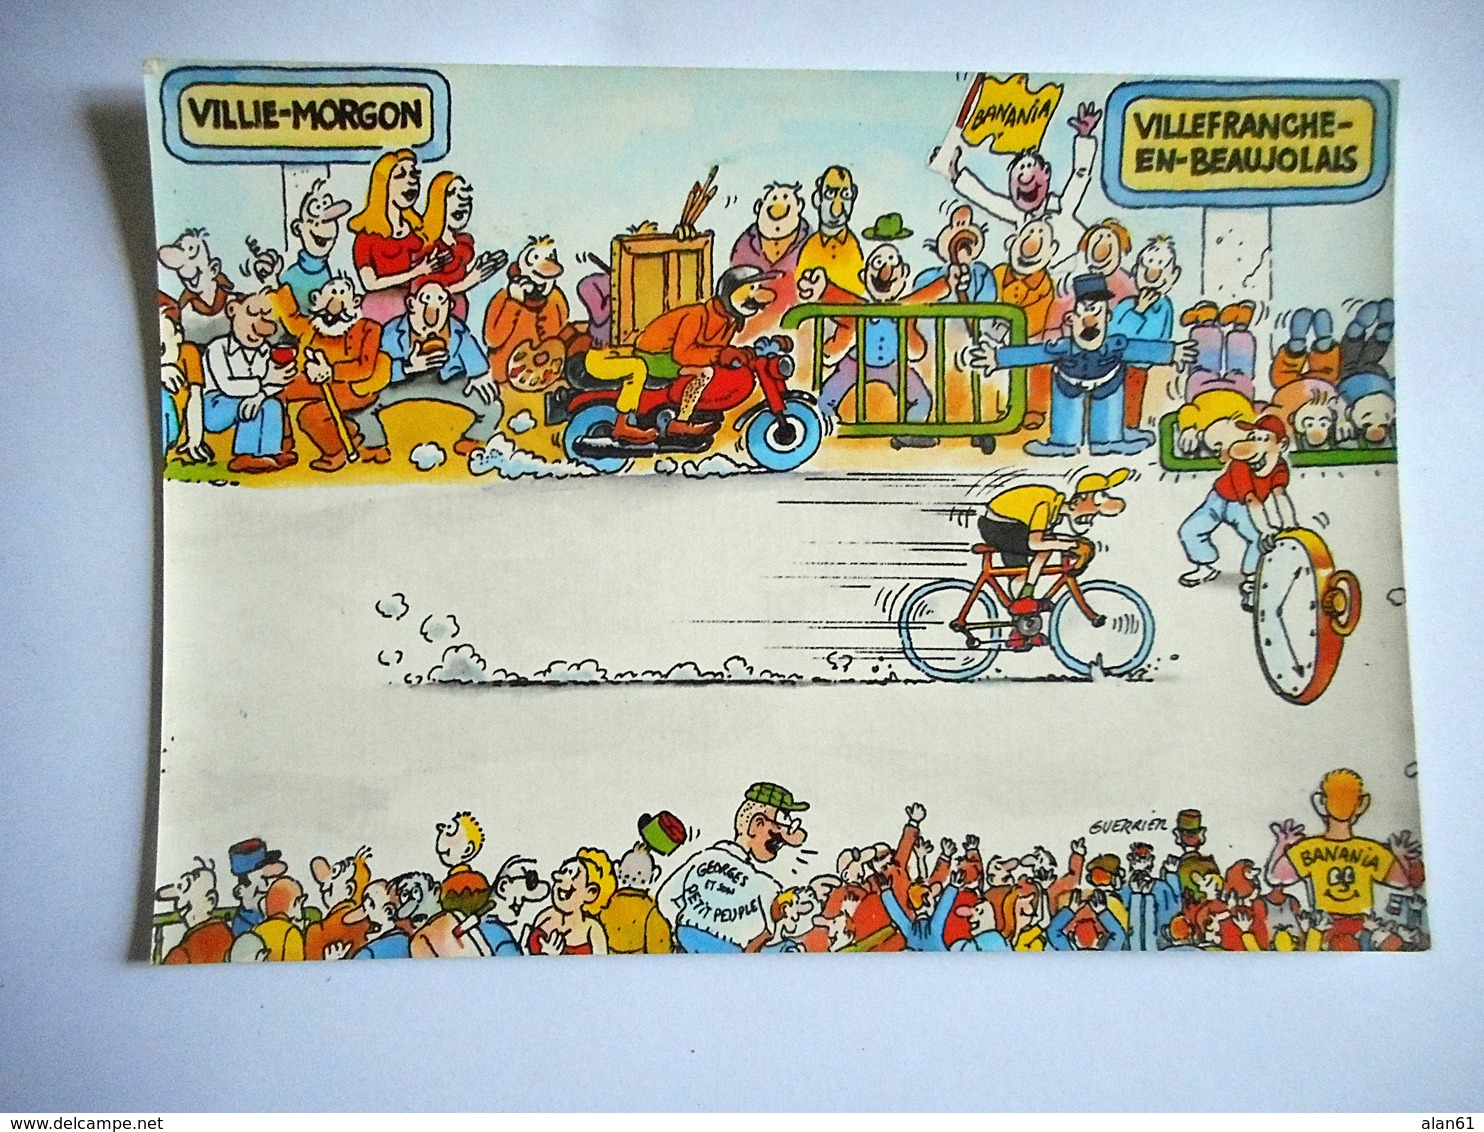 CPM TOUR DE FRANCE 1984 22 EME ETAPE VILLIE MORGON VILLEFRANCHE EN BEAUJOLAIS Pub BANANIA - Radsport